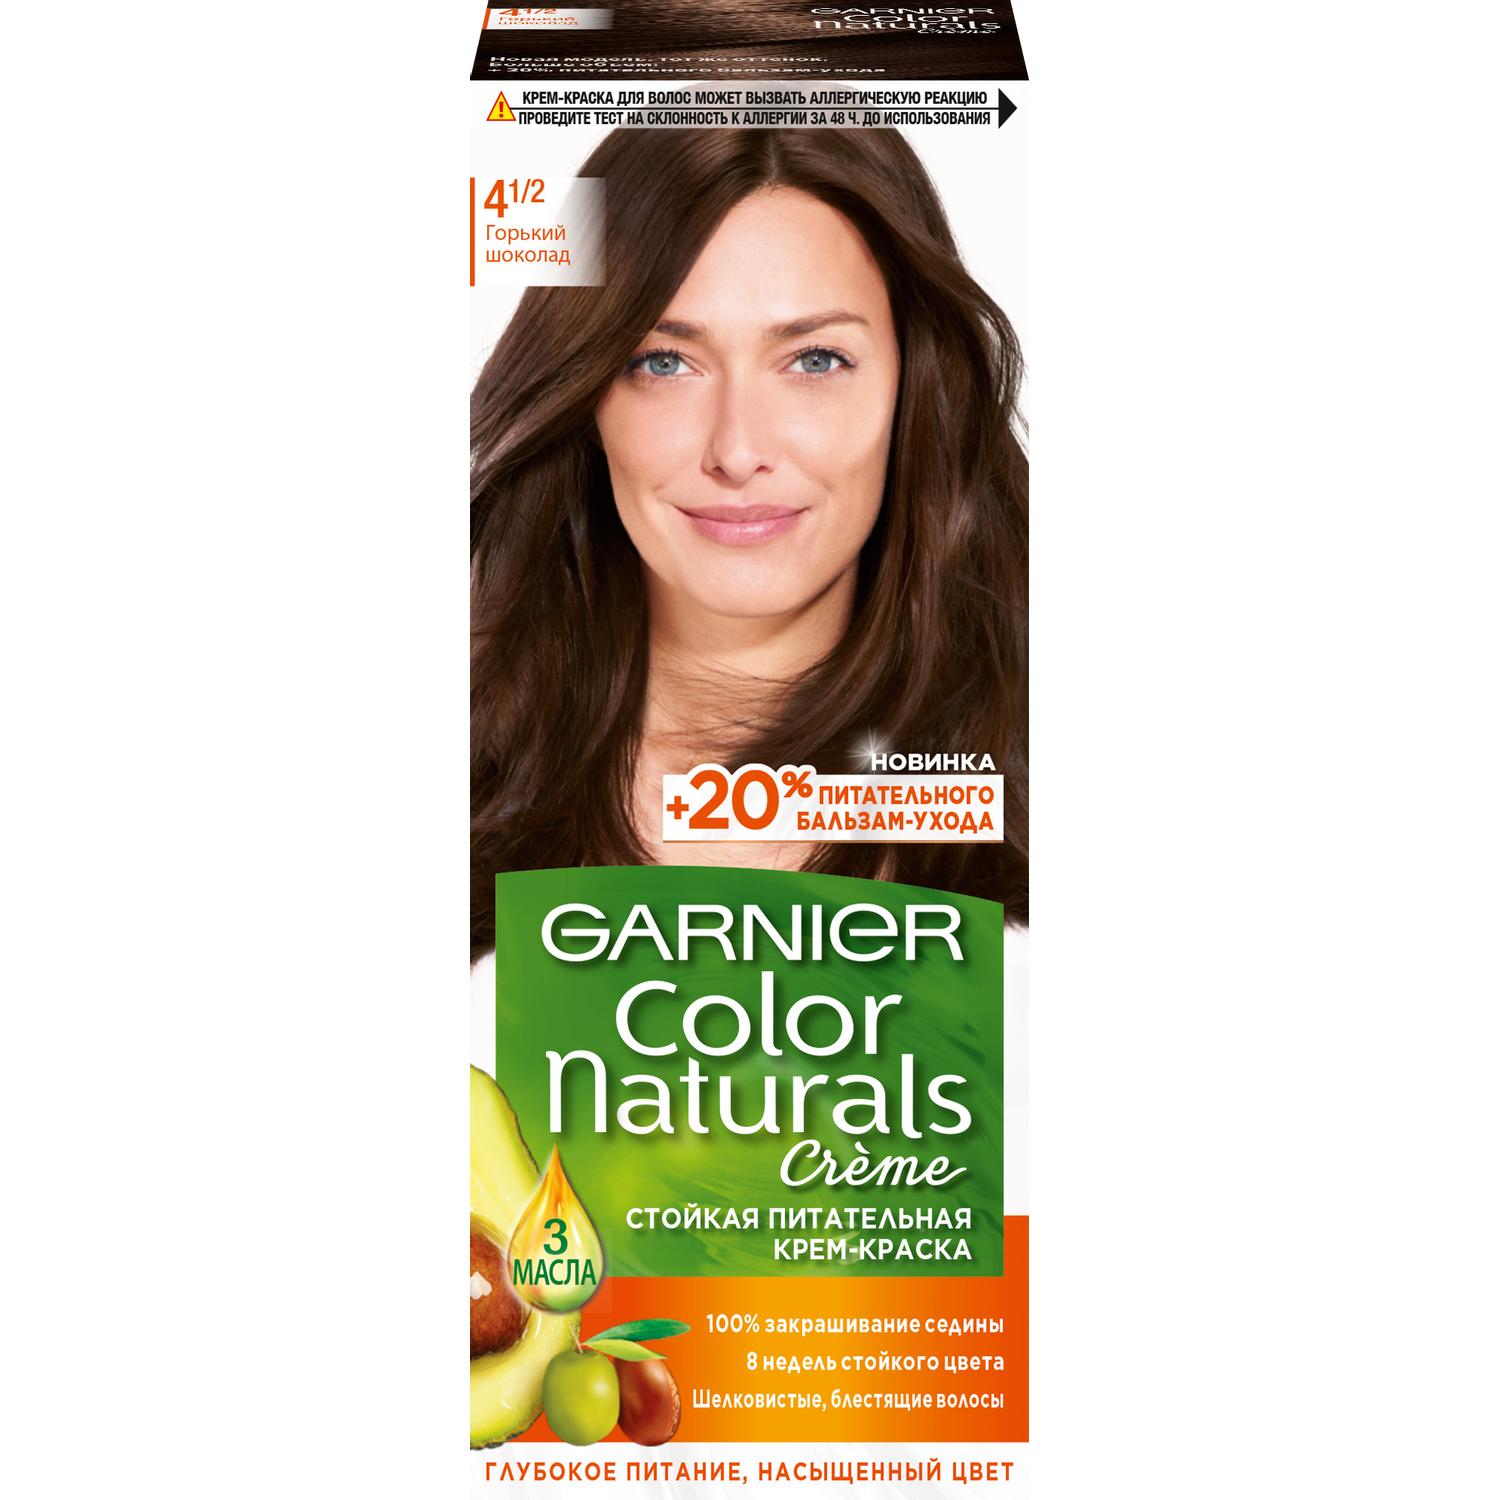 Крем-краска для волос Garnier Color Naturals 4.1/2 Горький Шоколад 110 мл краска для волос schwarzkopf luminance color 9 10 перламутровый блонд